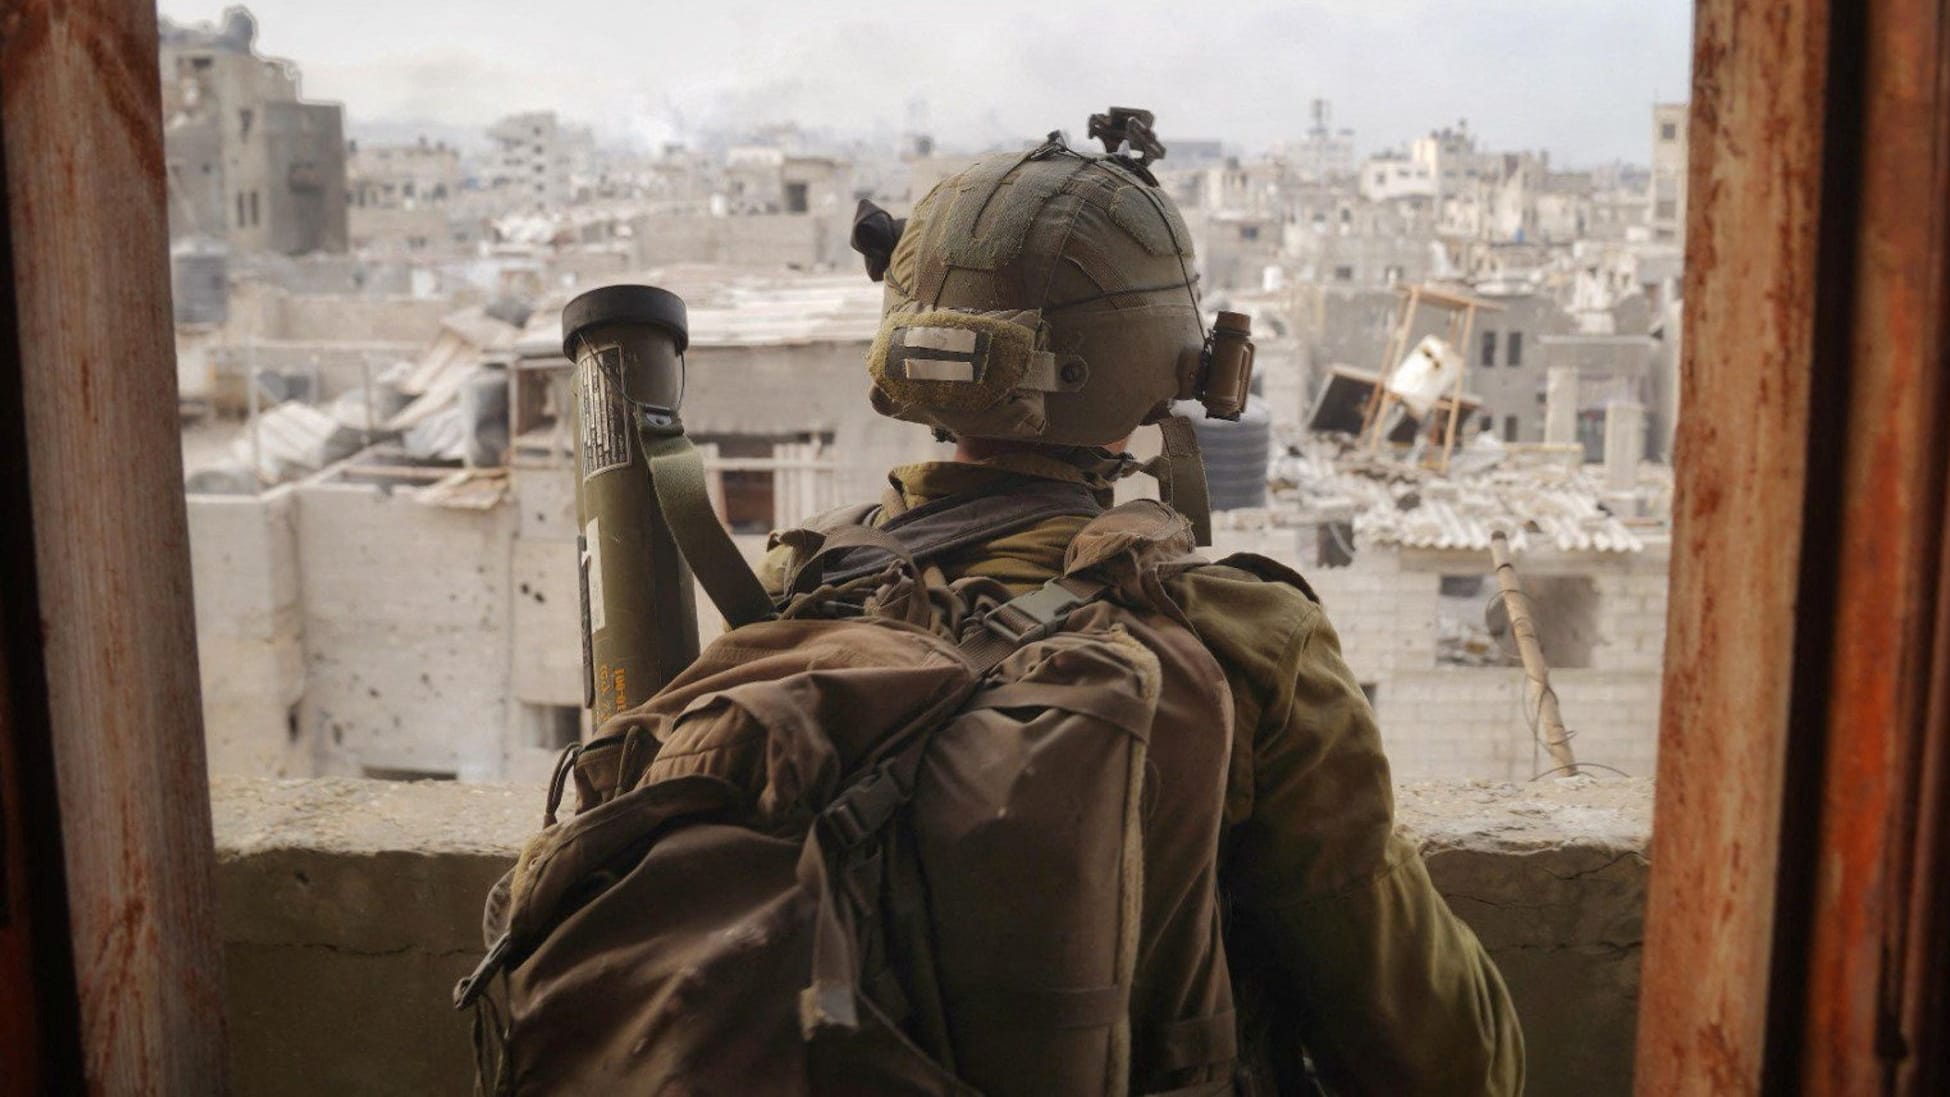 Israel: Hoffnung auf Frieden nach Krieg? Der letzte Ausweg aus der Hölle